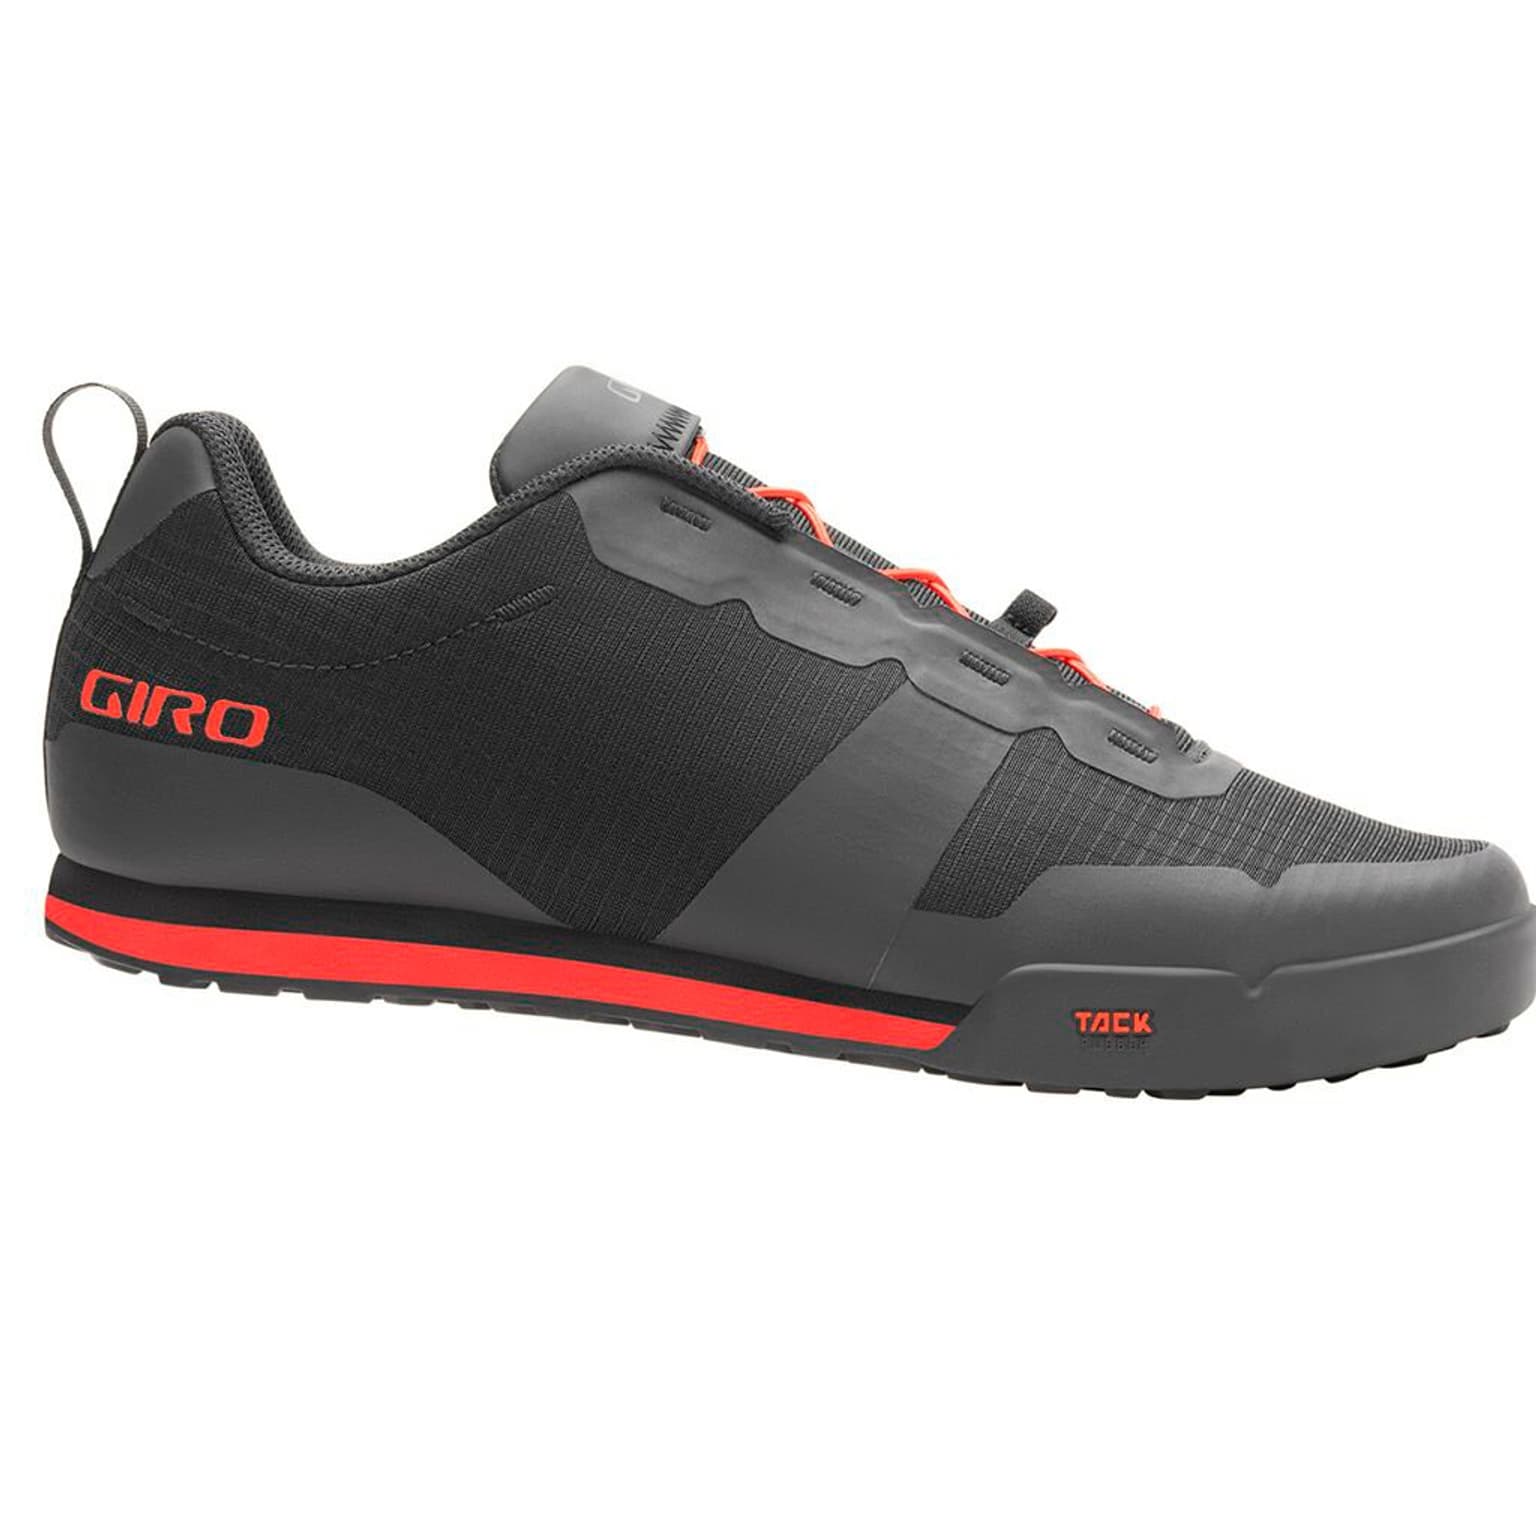 Giro Giro Tracker FL Shoe Scarpe da ciclismo nero 1